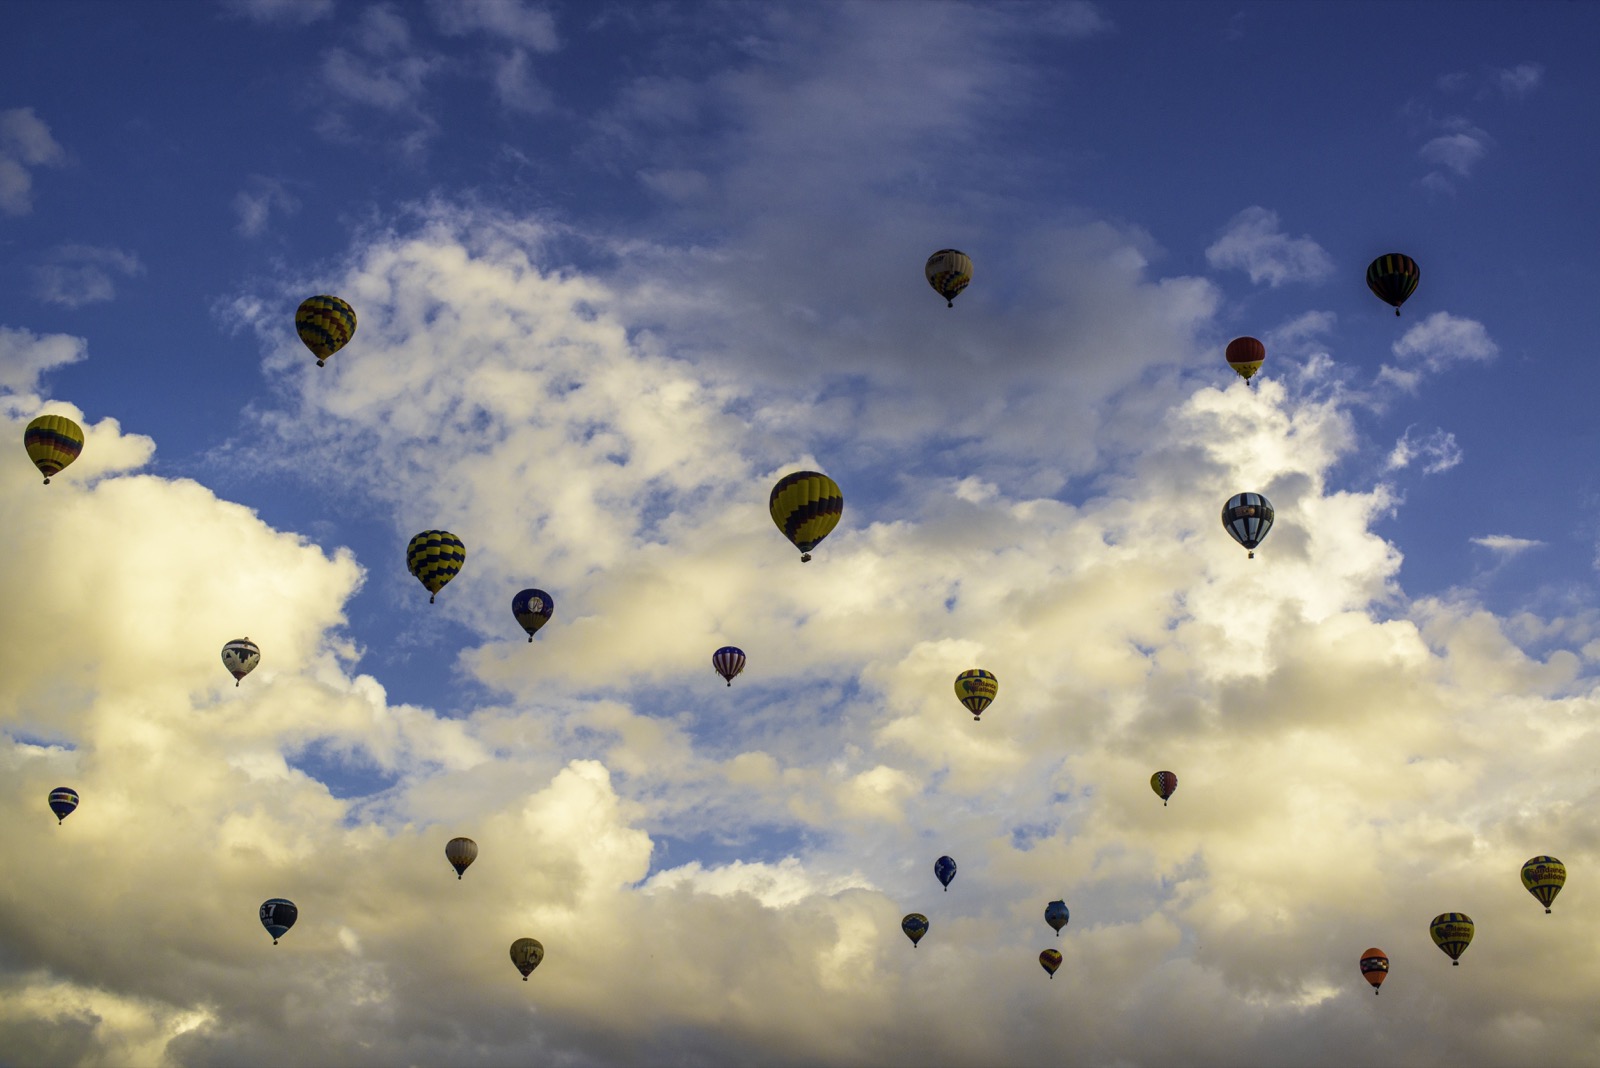 Những quả khí cầu khổng lồ khi nhìn từ xa. Ảnh chụp bởi Leo York.